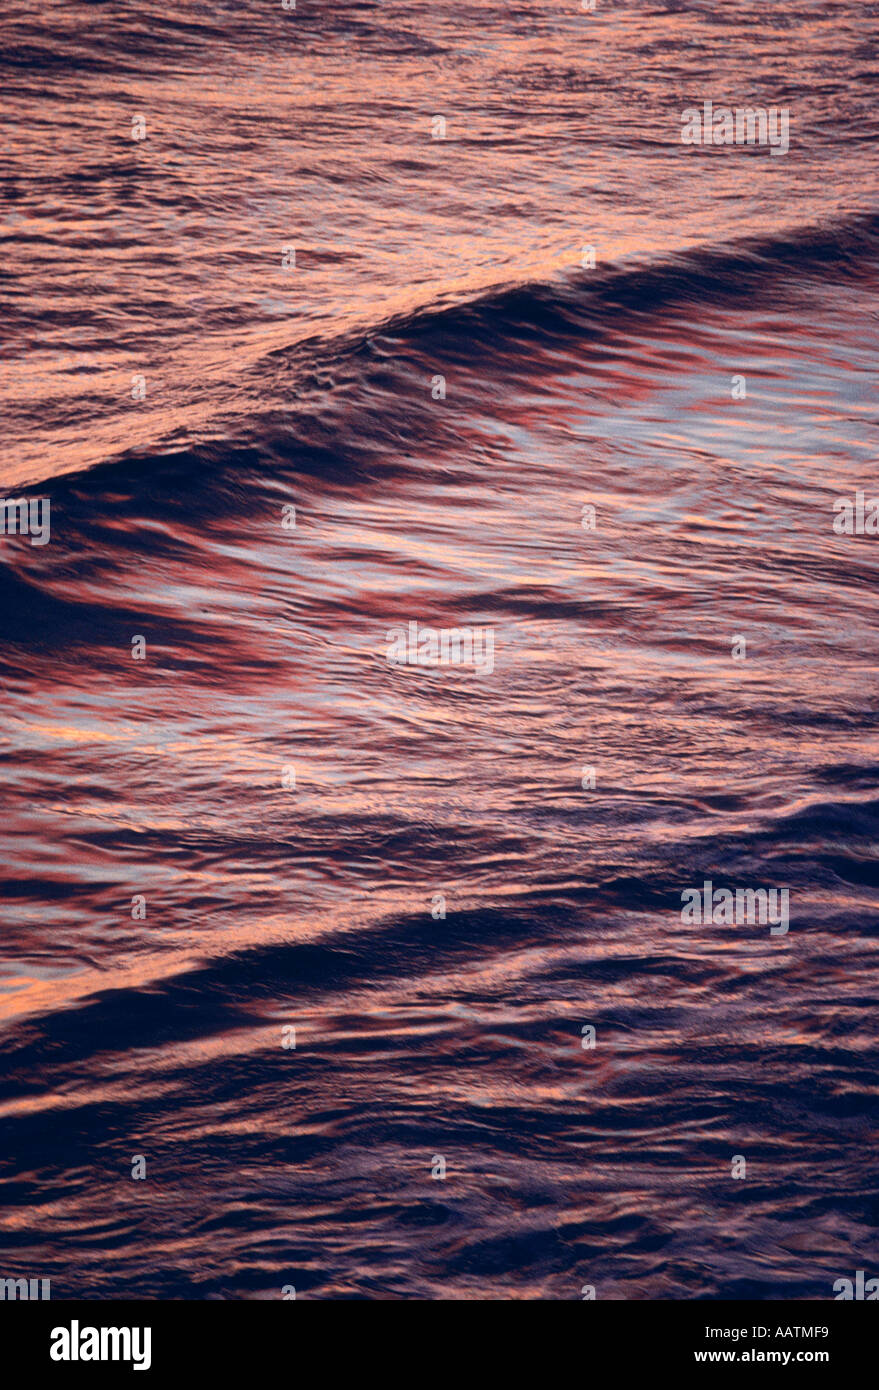 Détail de l'océan Pacifique au coucher du soleil La Jolla California USA Banque D'Images